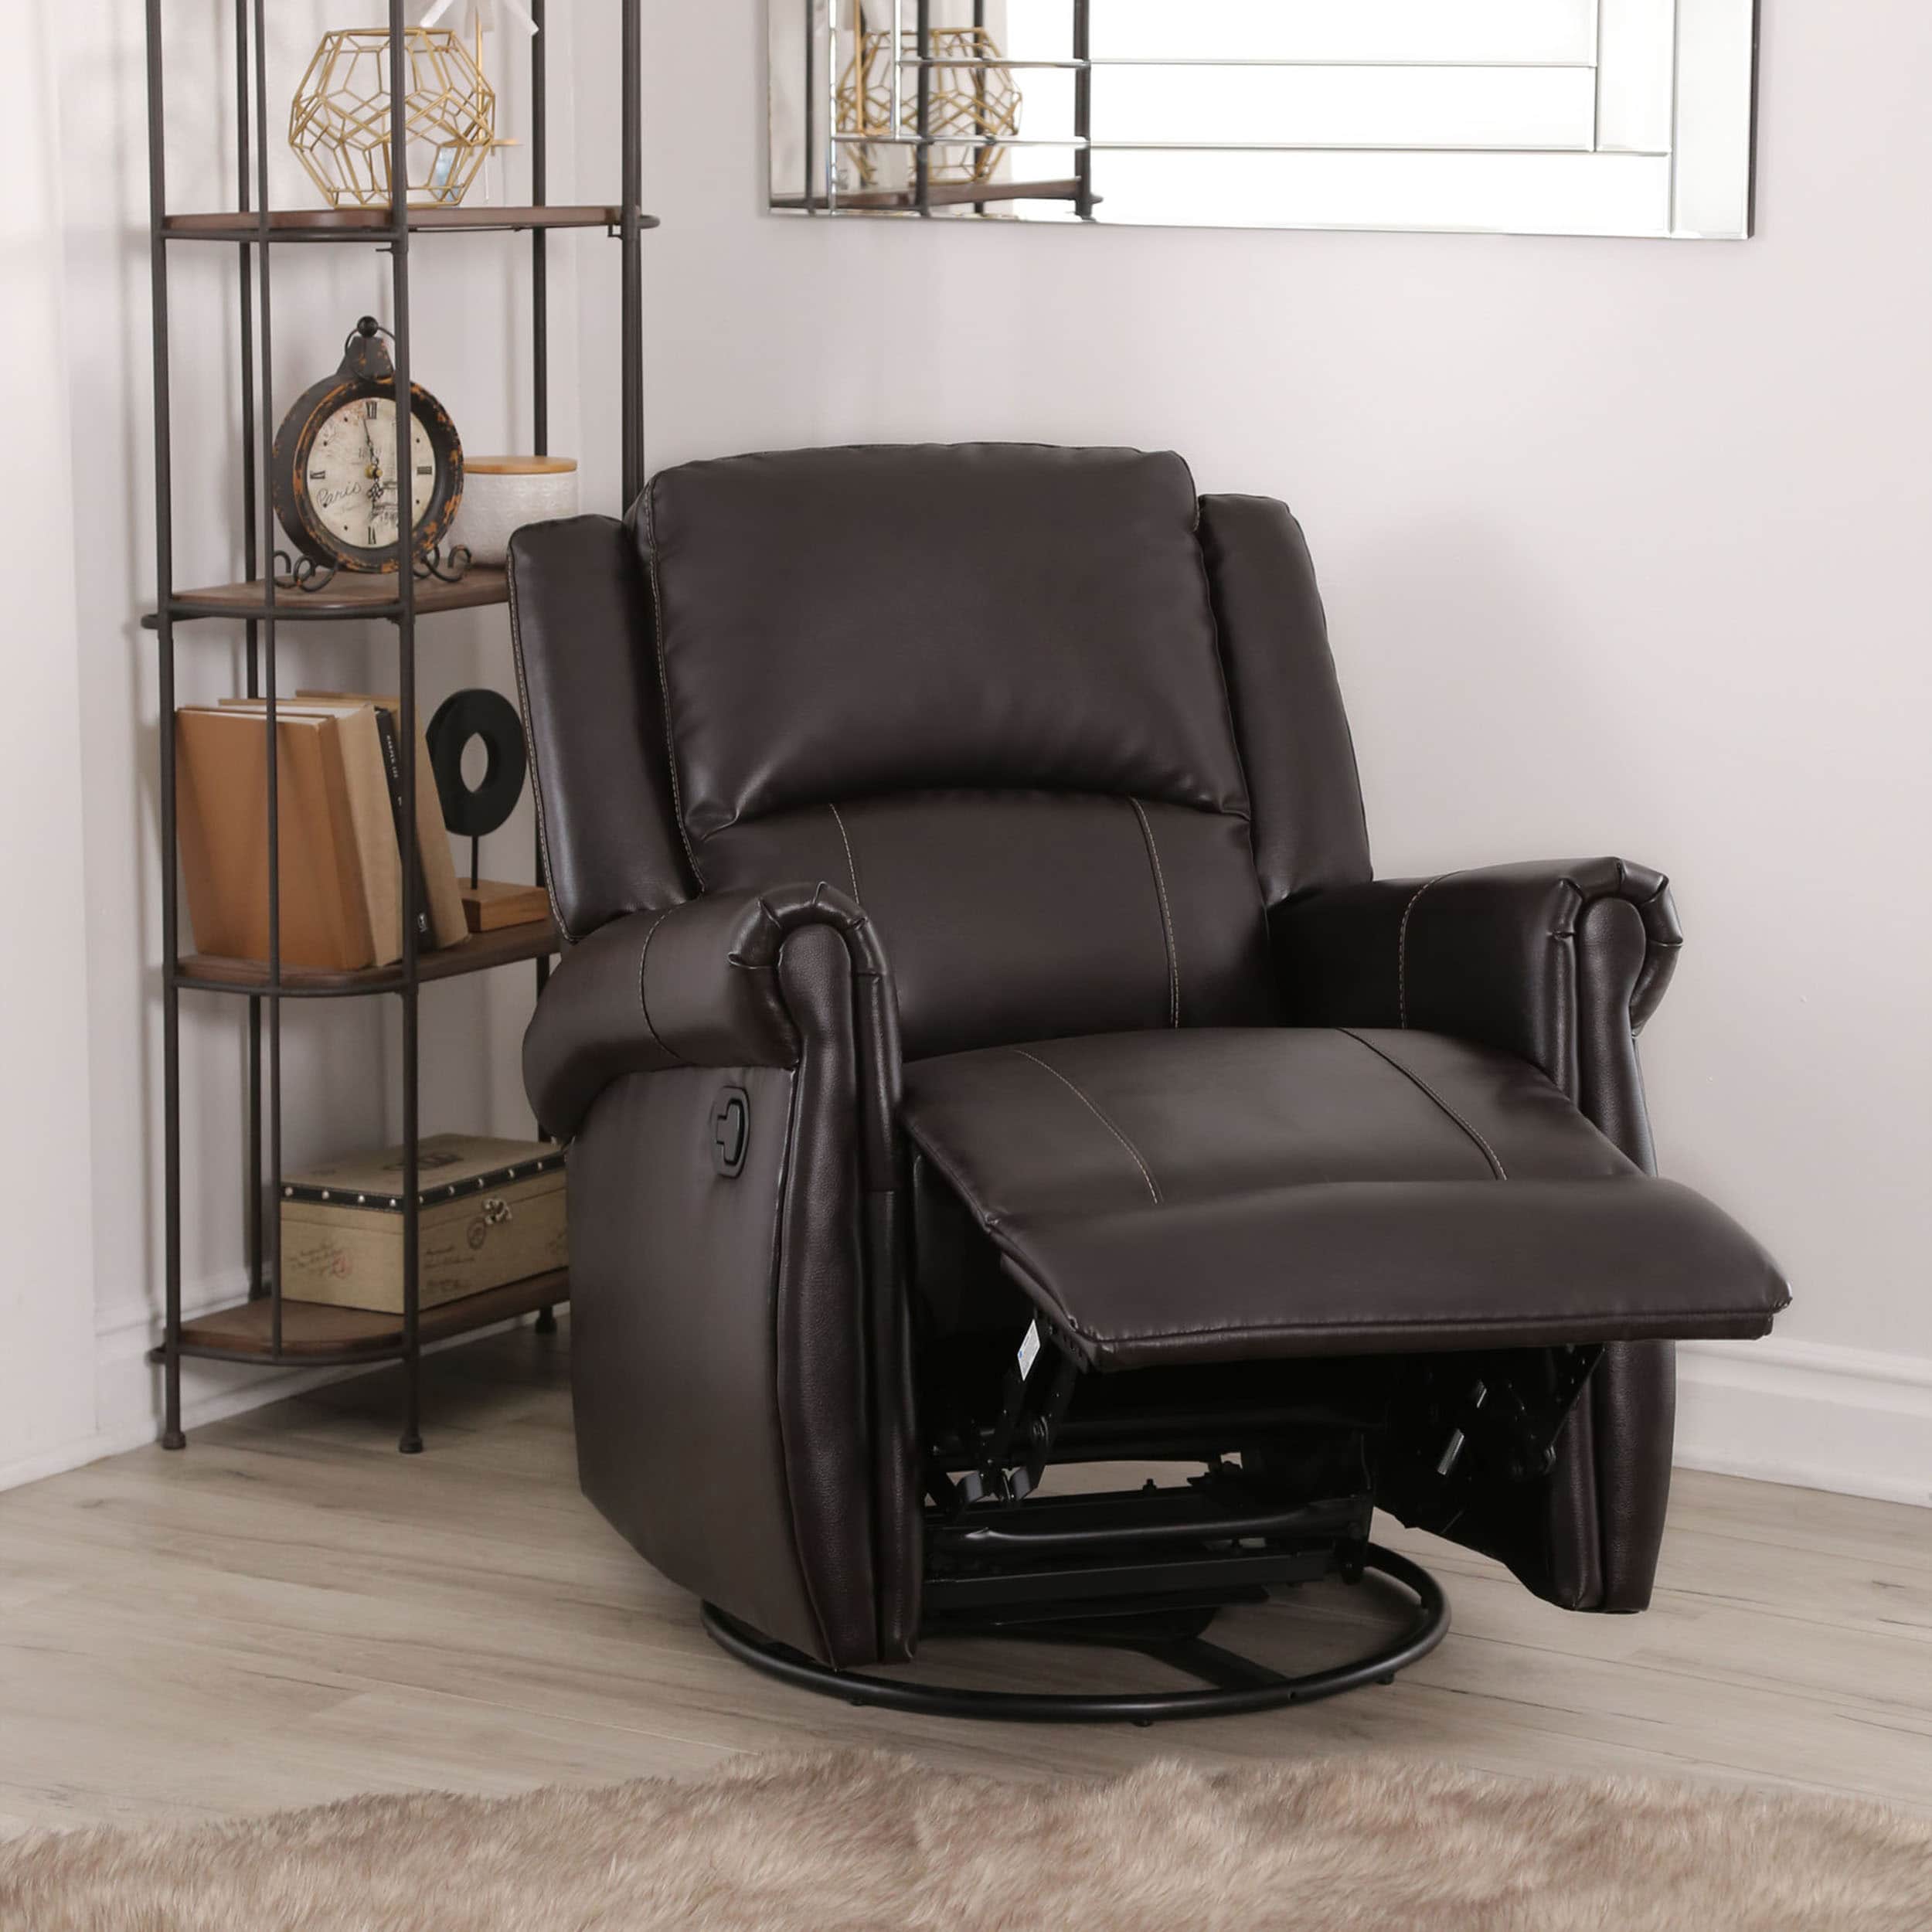 Shop Abbyson Elena Dark Brown Swivel Glider Recliner Chair - On Sale